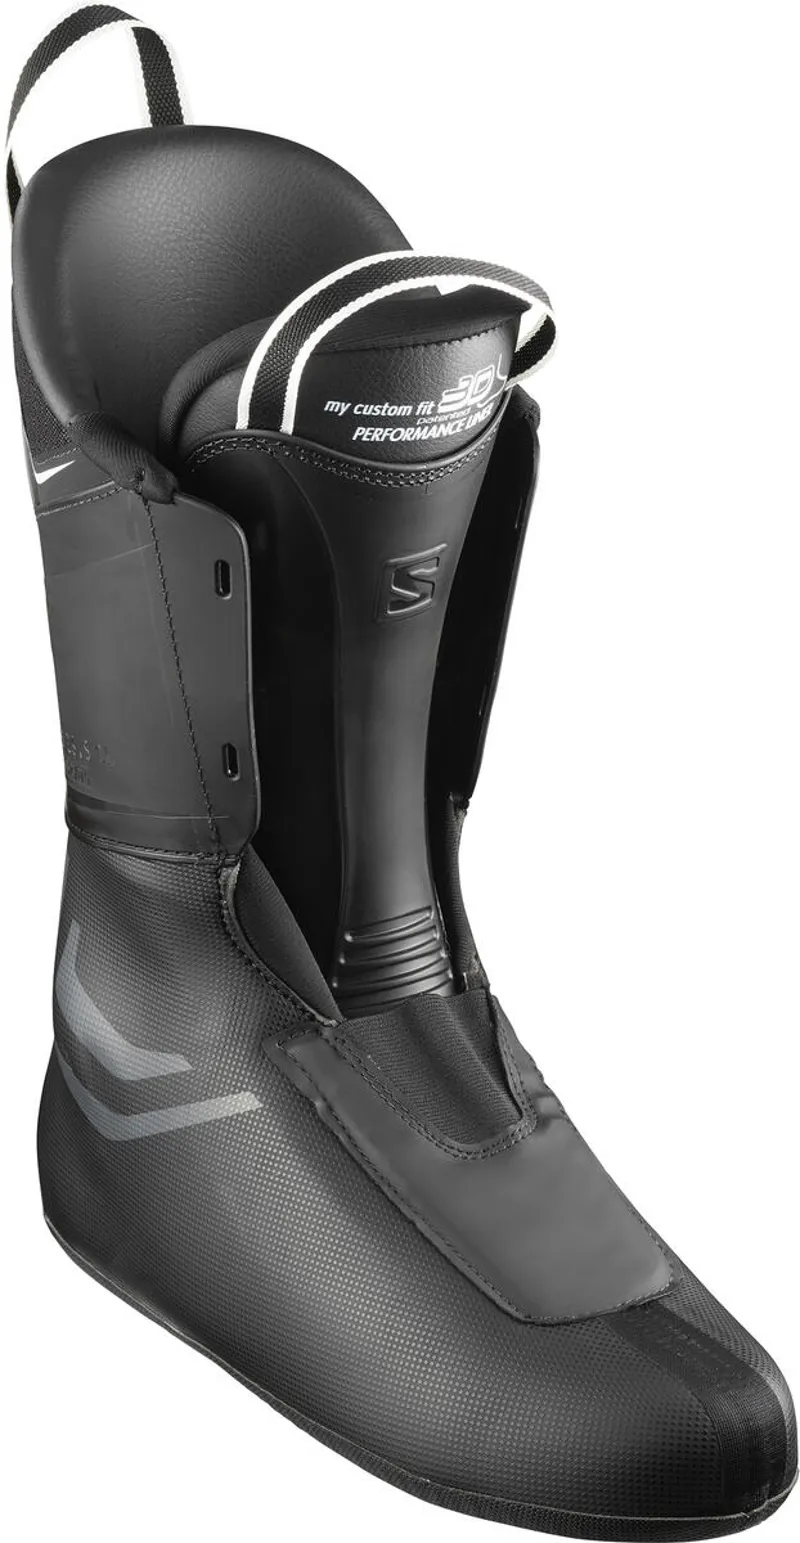 2021 Salomon S/Pro 100 Mens Ski Boots Black